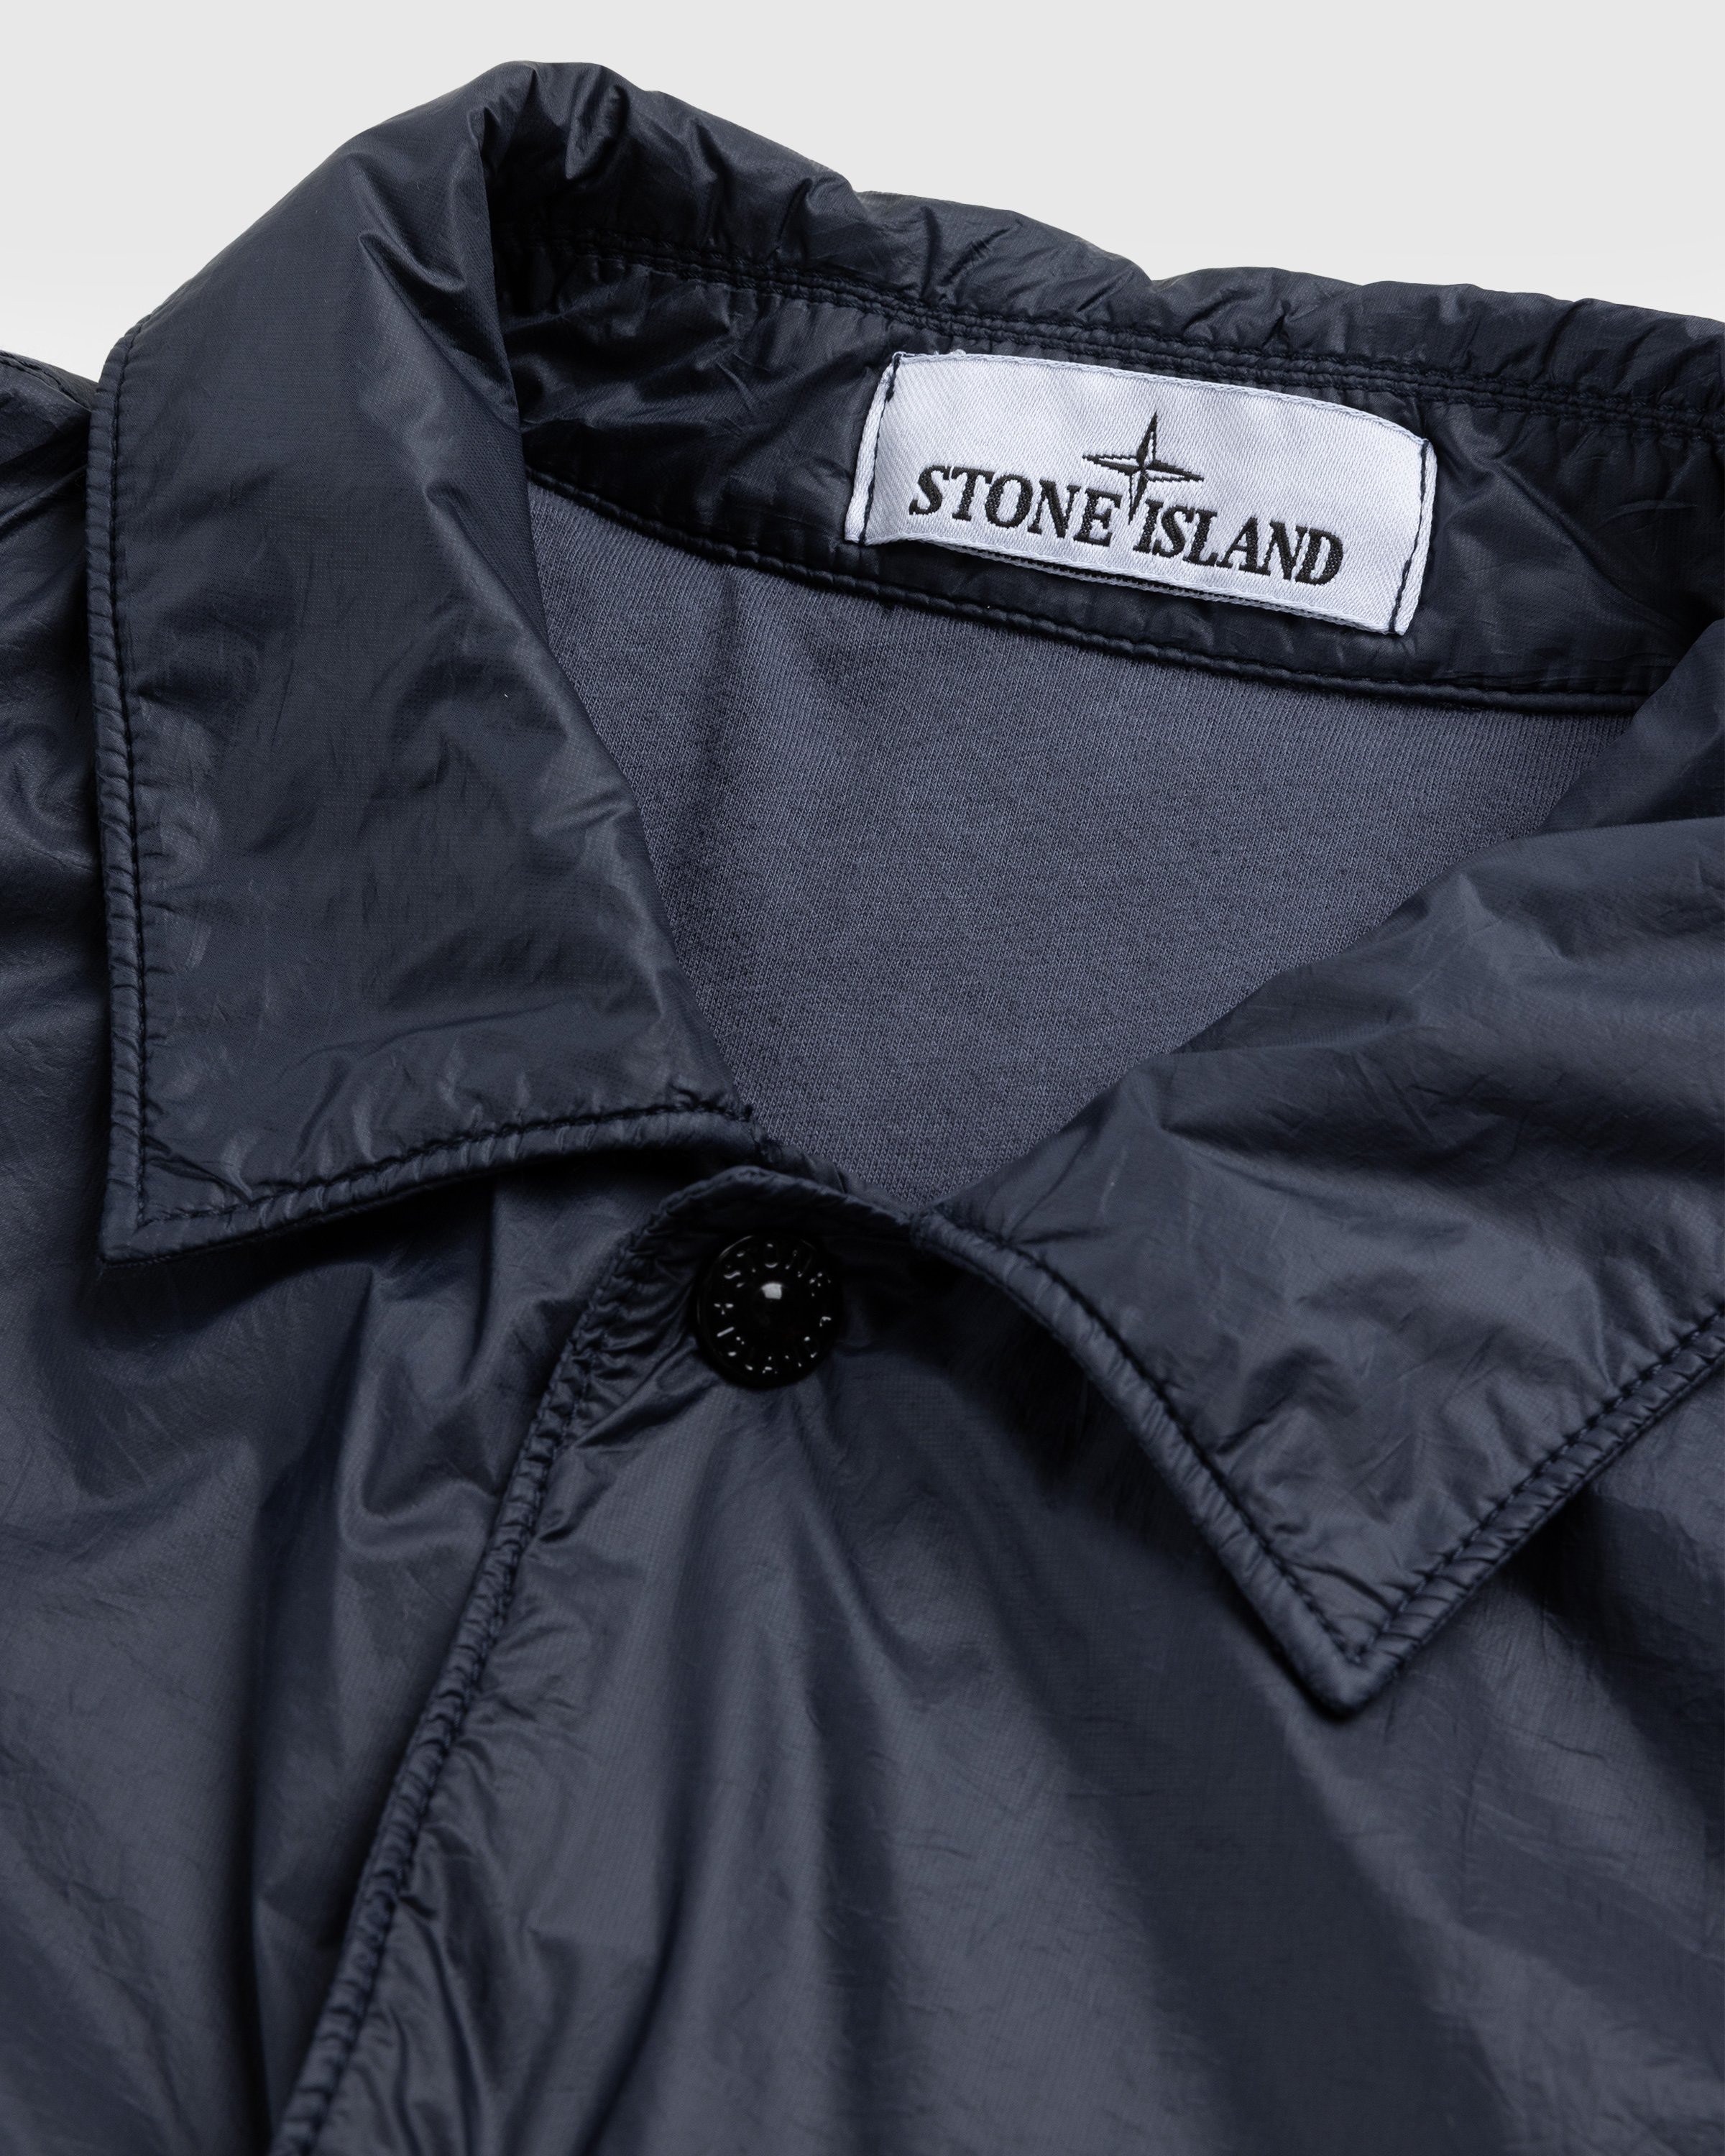 Stone Island - Overshirt Navy Blue 11025 - Clothing - Blue - Image 6